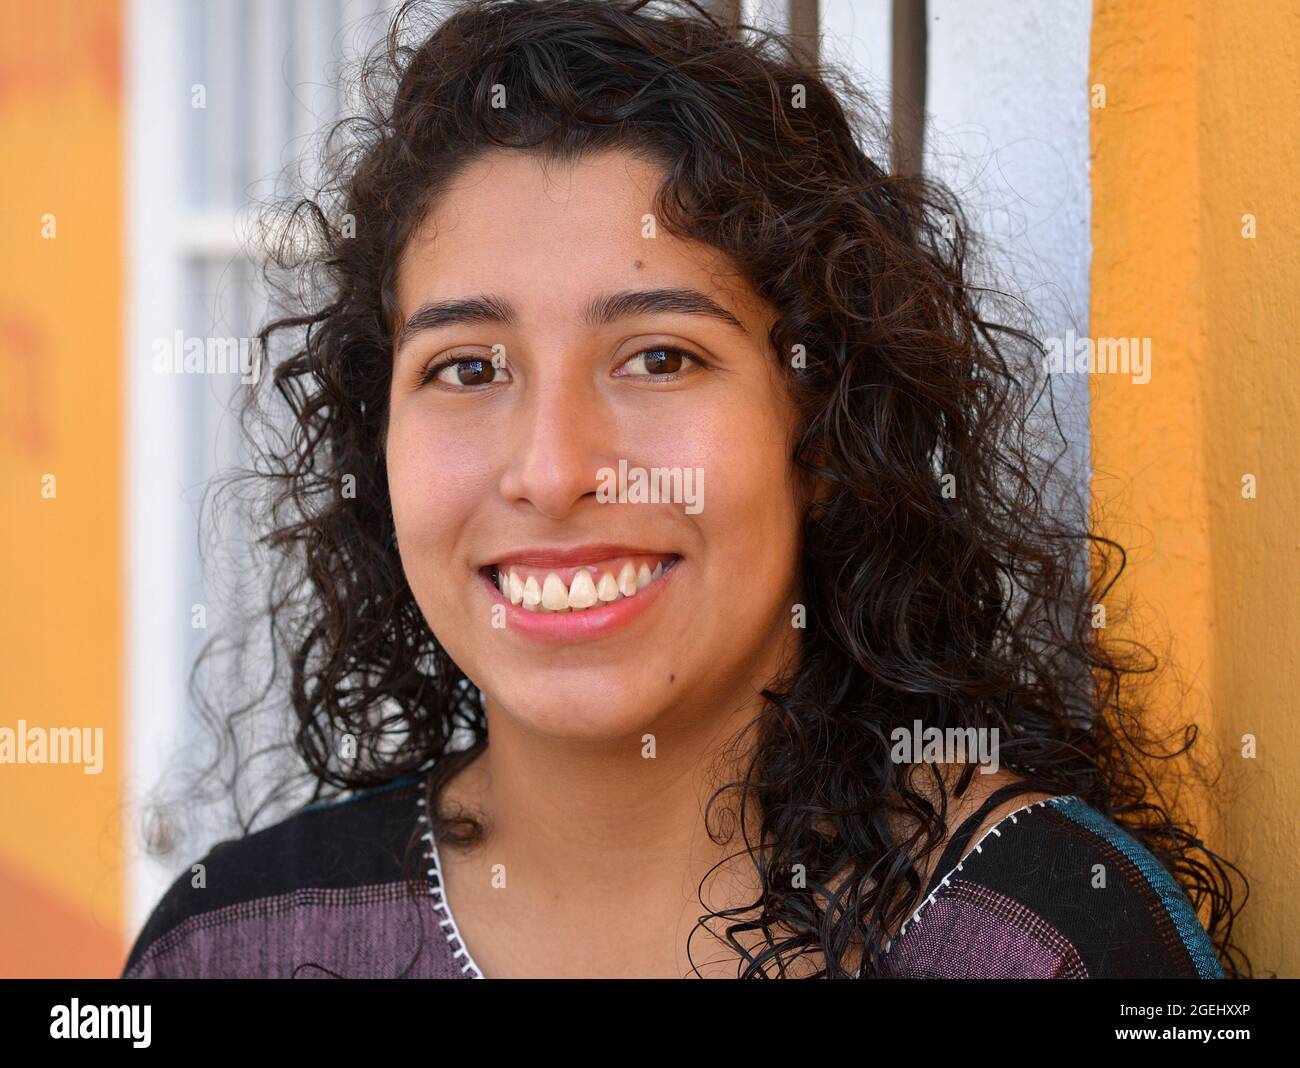 Schöne positive emotionale junge mexikanische Latina hispanische Frau mit langen schwarzen Locken lächelt vor einer weißen Sicherheitstür. Stockfoto